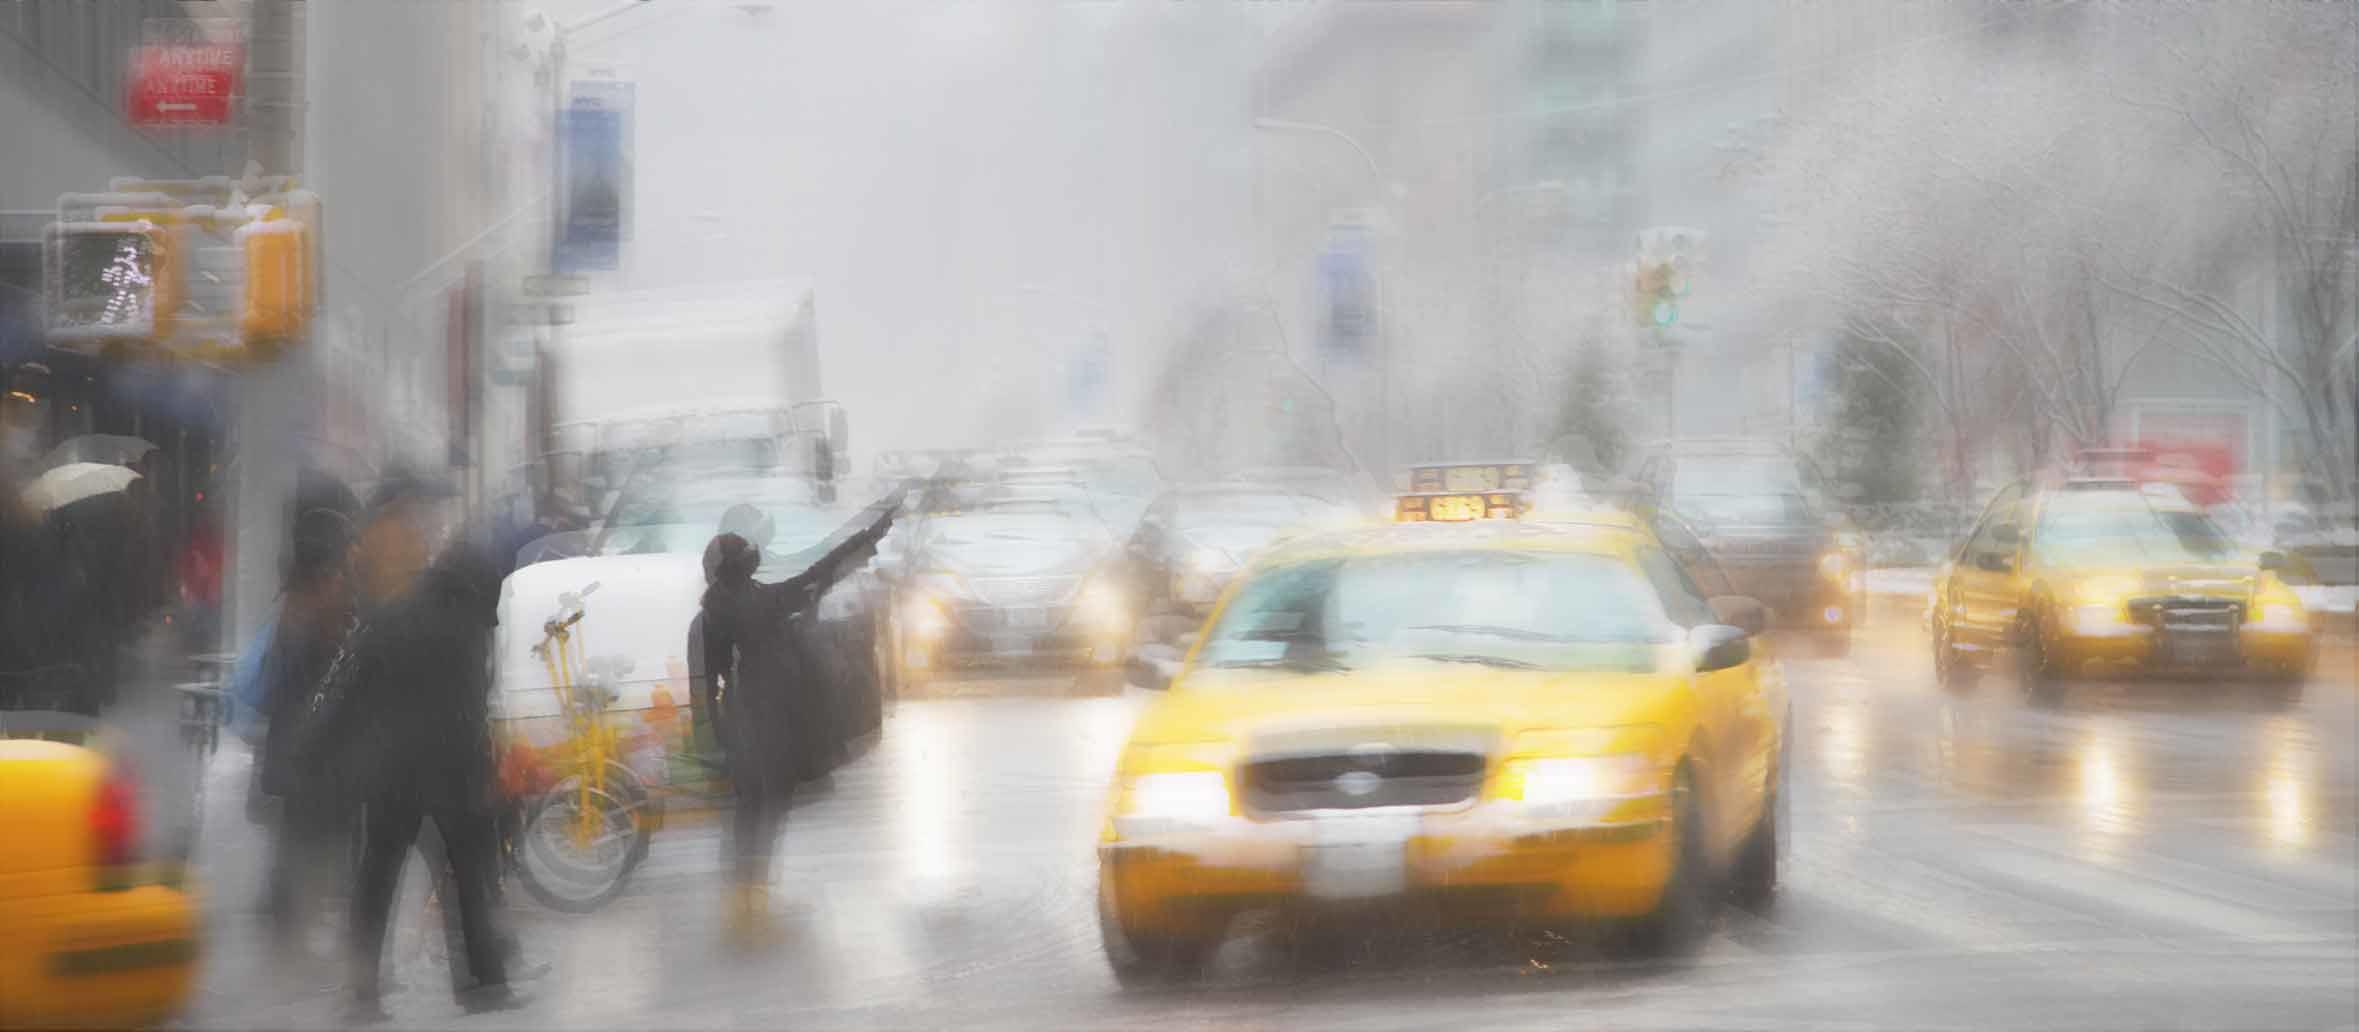 Ein regnerischer und geschäftiger Tag in der Stadt, verschwommen, um die Sicht mit beschlagenen Brillengläsern zu simulieren.